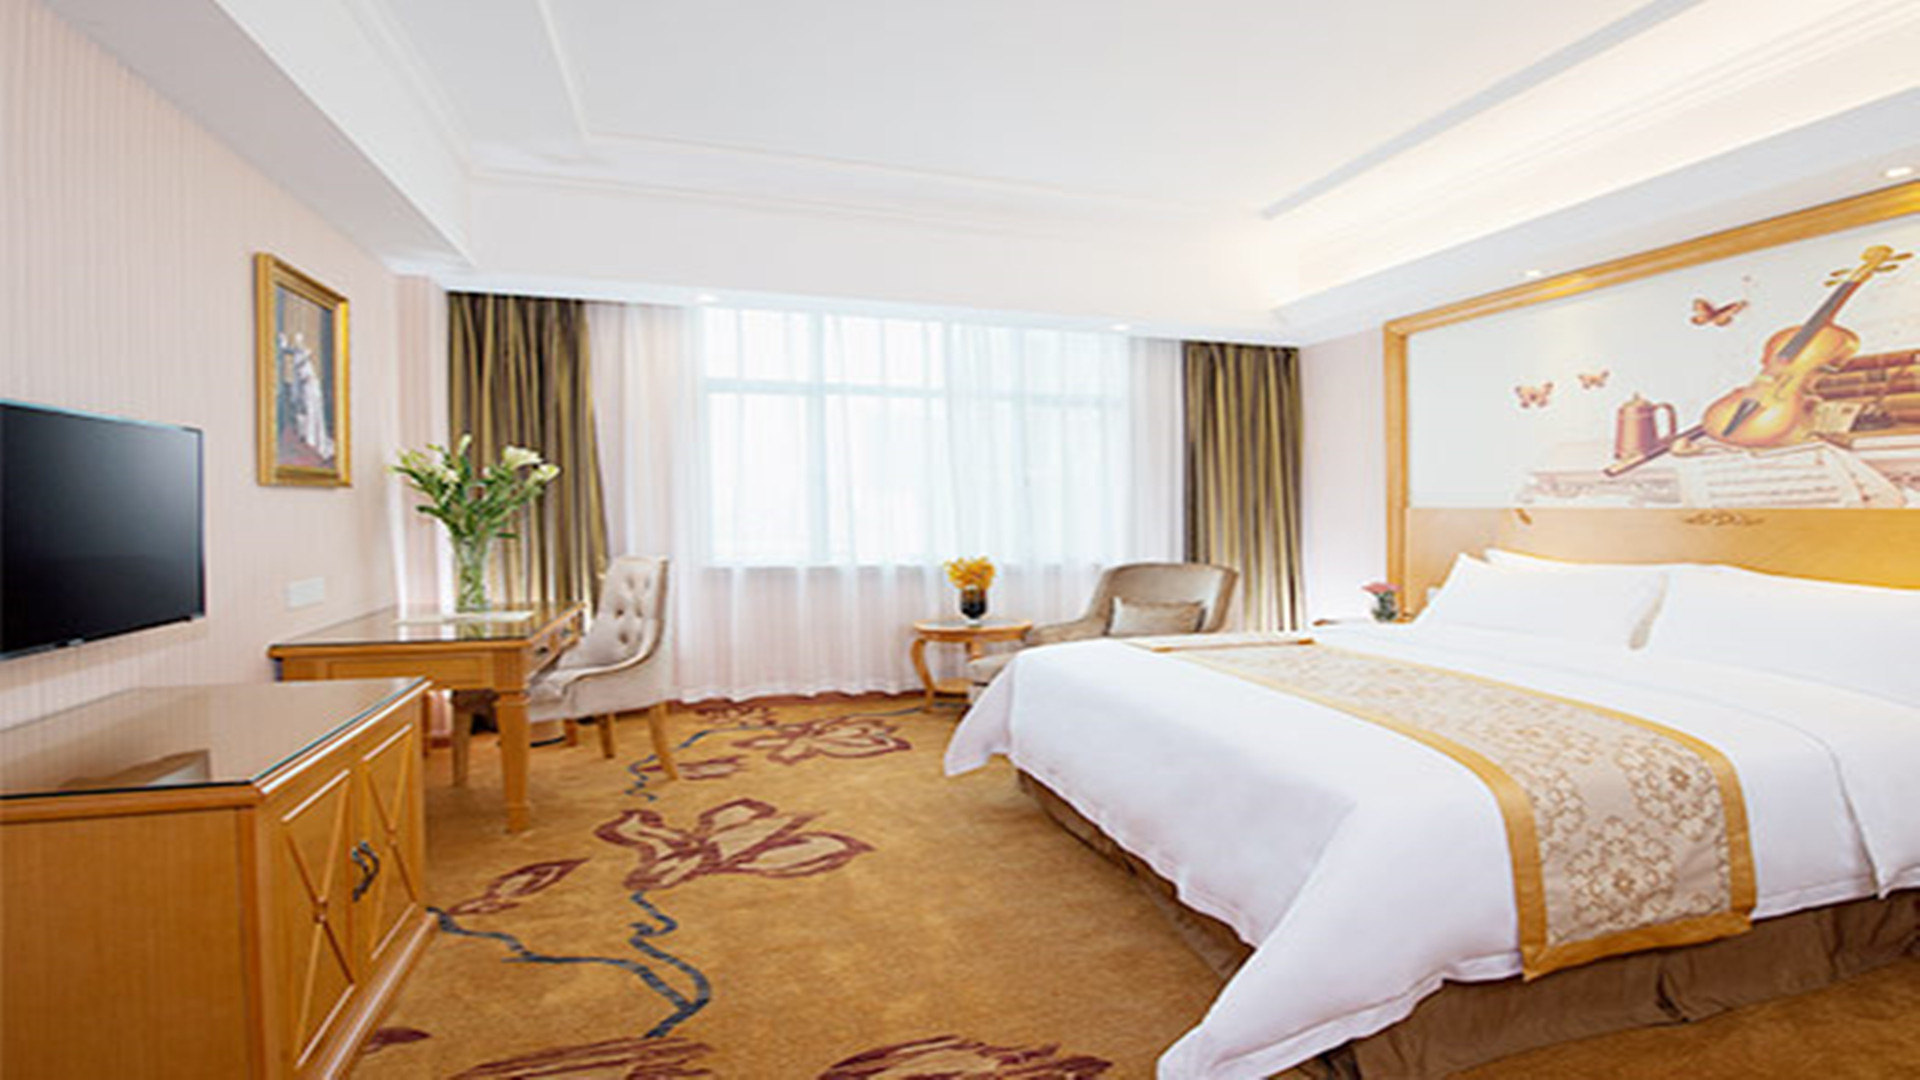 上海维也纳智好酒店图片